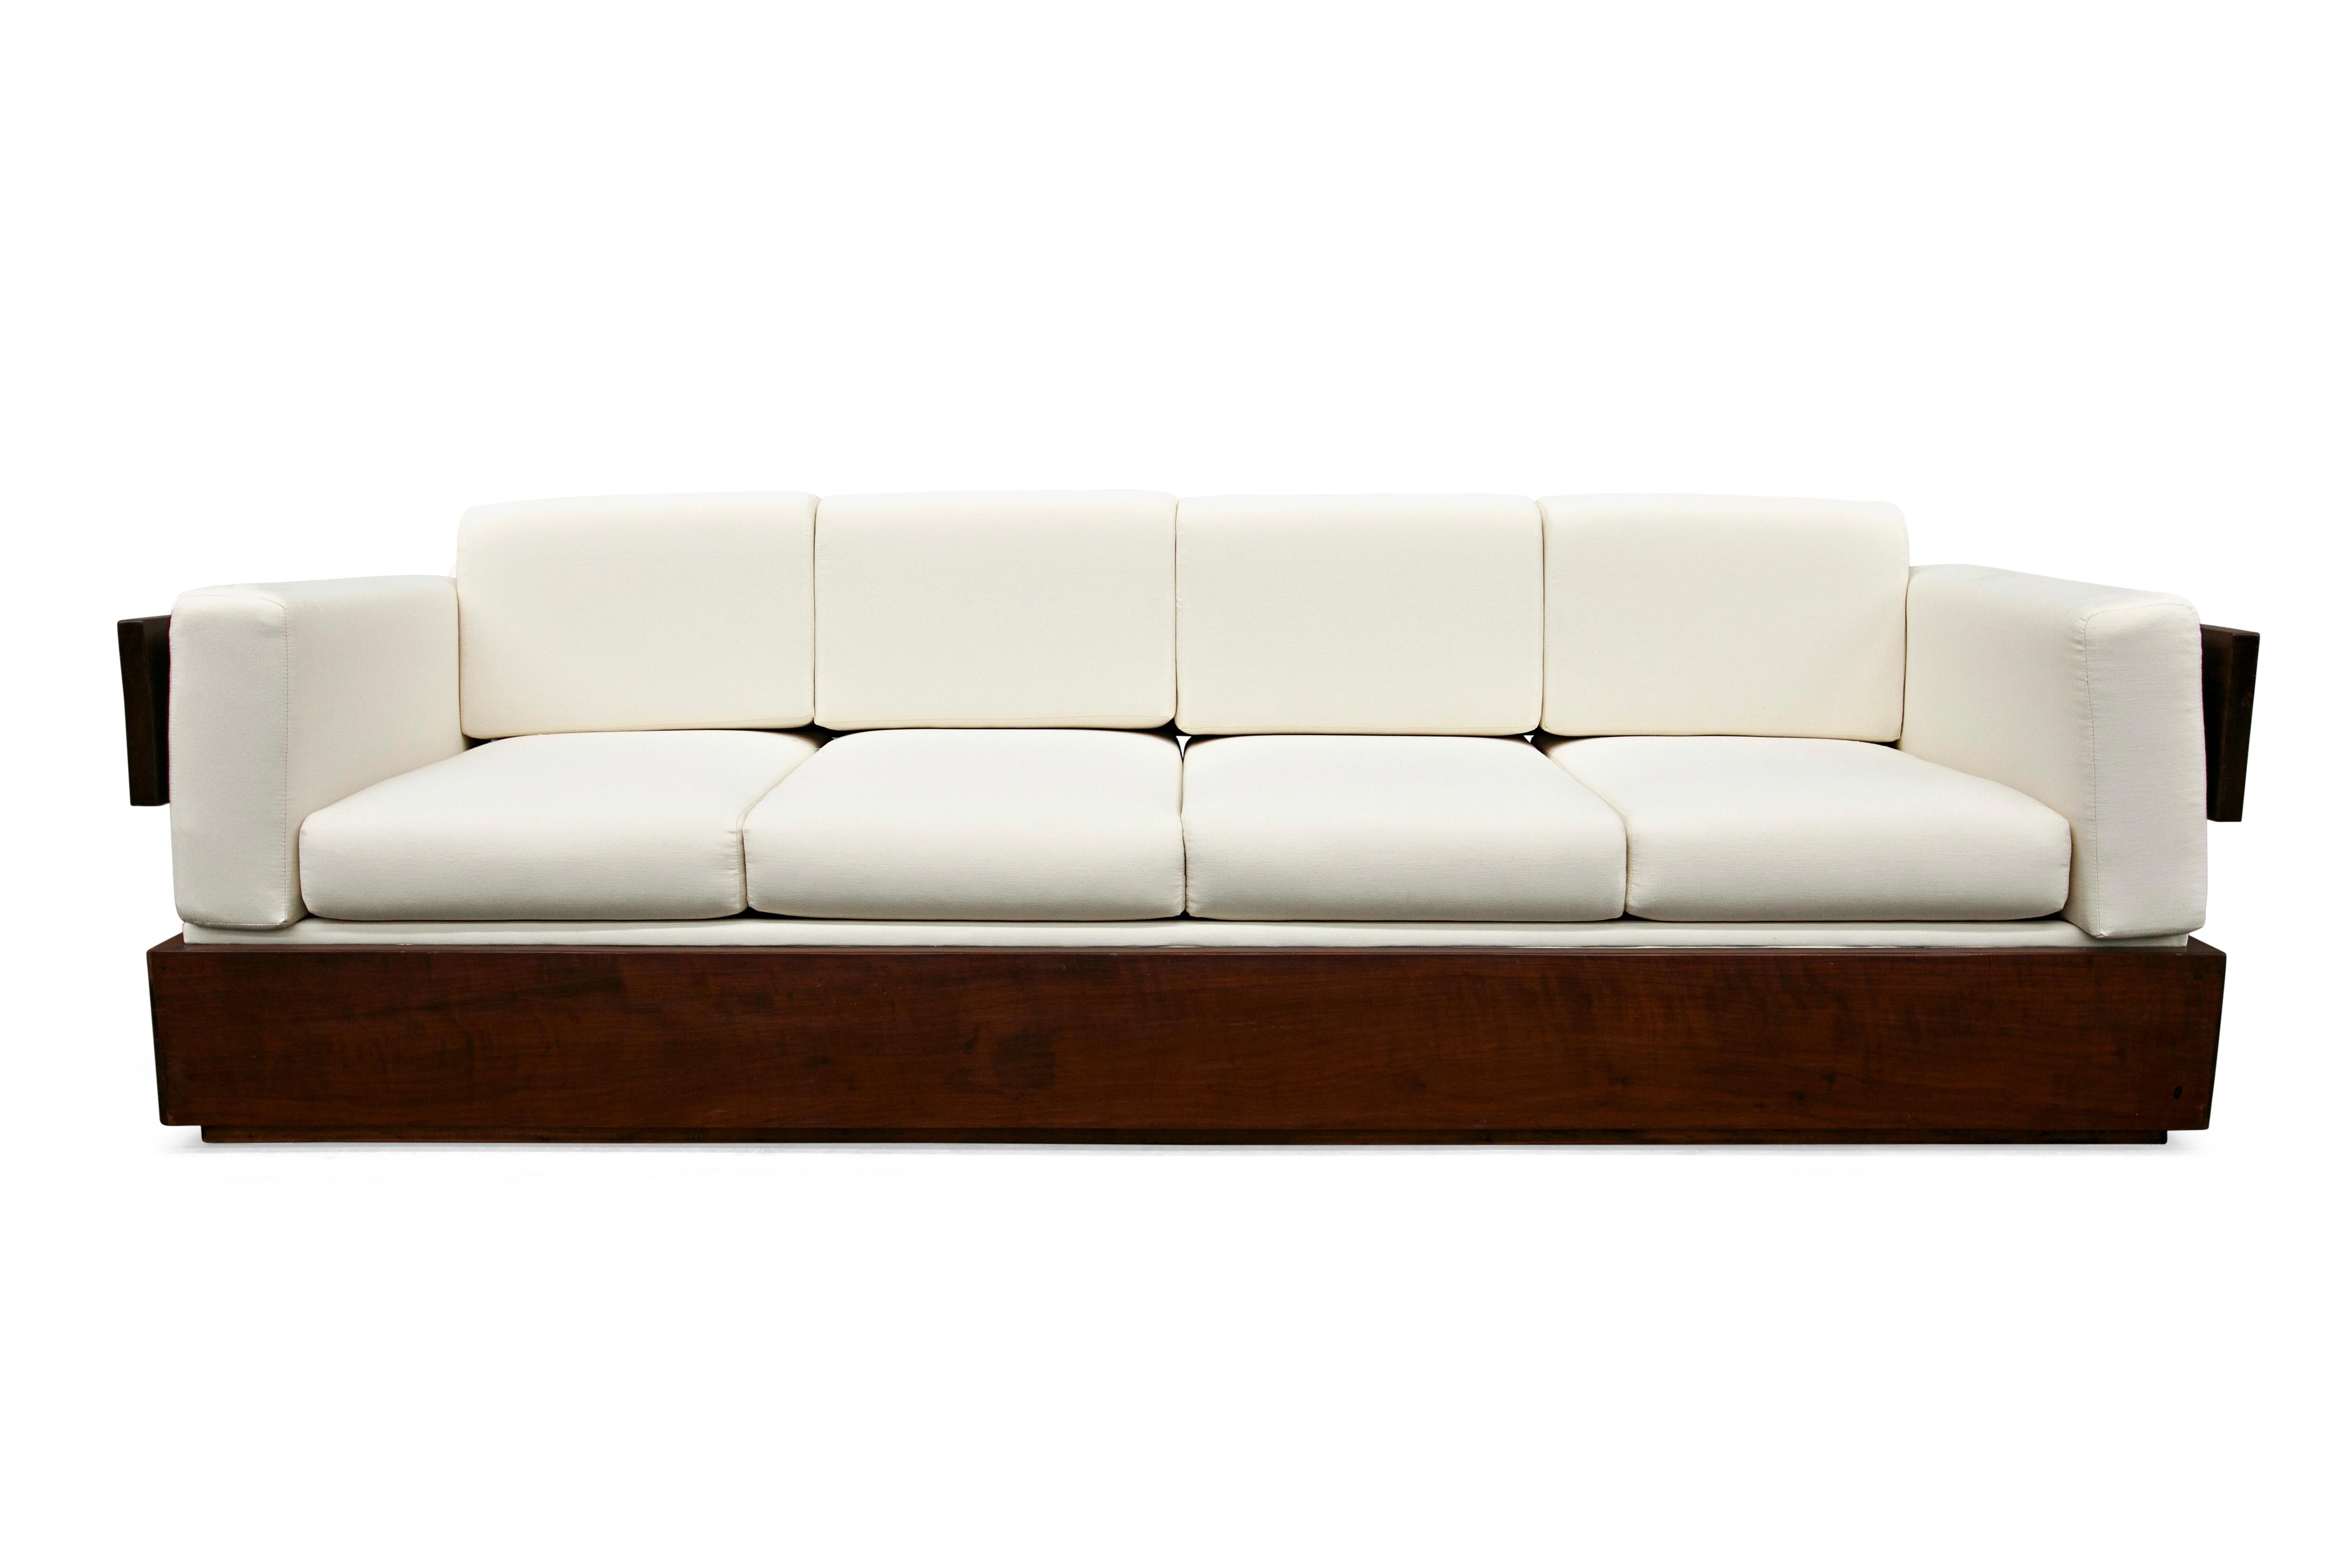 Dieses moderne brasilianische Sofa aus Hartholz und weißem Leinen von Celina aus den 60er Jahren ist nichts weniger als spektakulär!

Der Rahmen des Sofas ist aus brasilianischem Palisanderholz gefertigt  und die Kissen wurden mit weißem Leinen neu